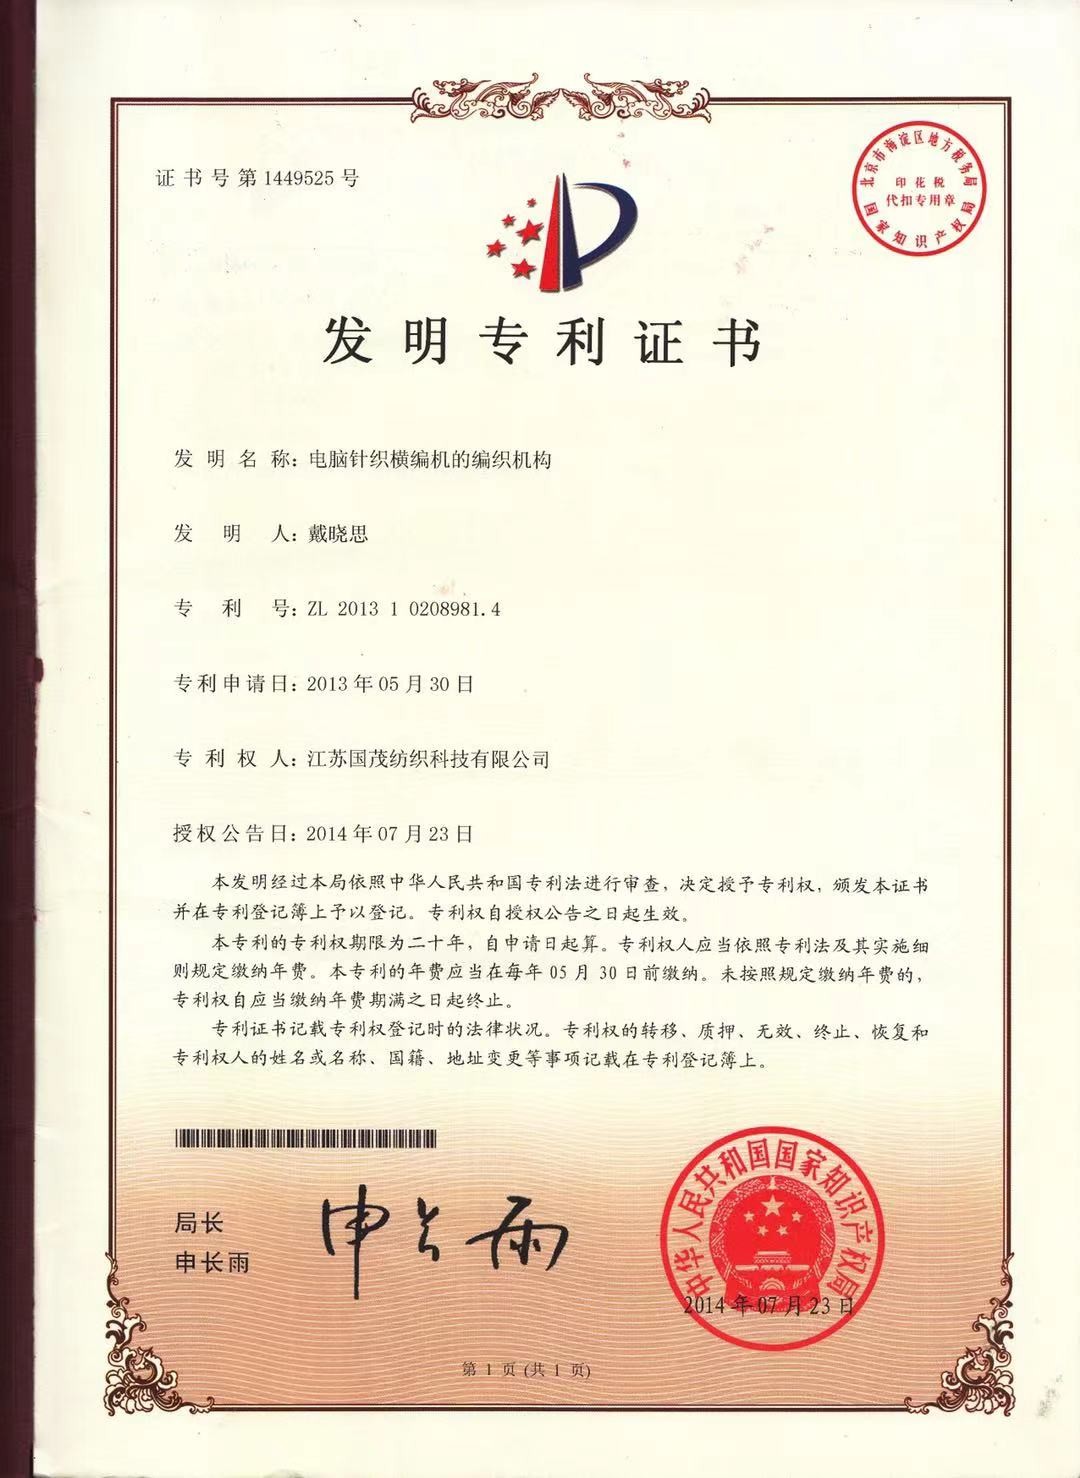 Changshu Guosheng Knitting Machinery Factory Certifications